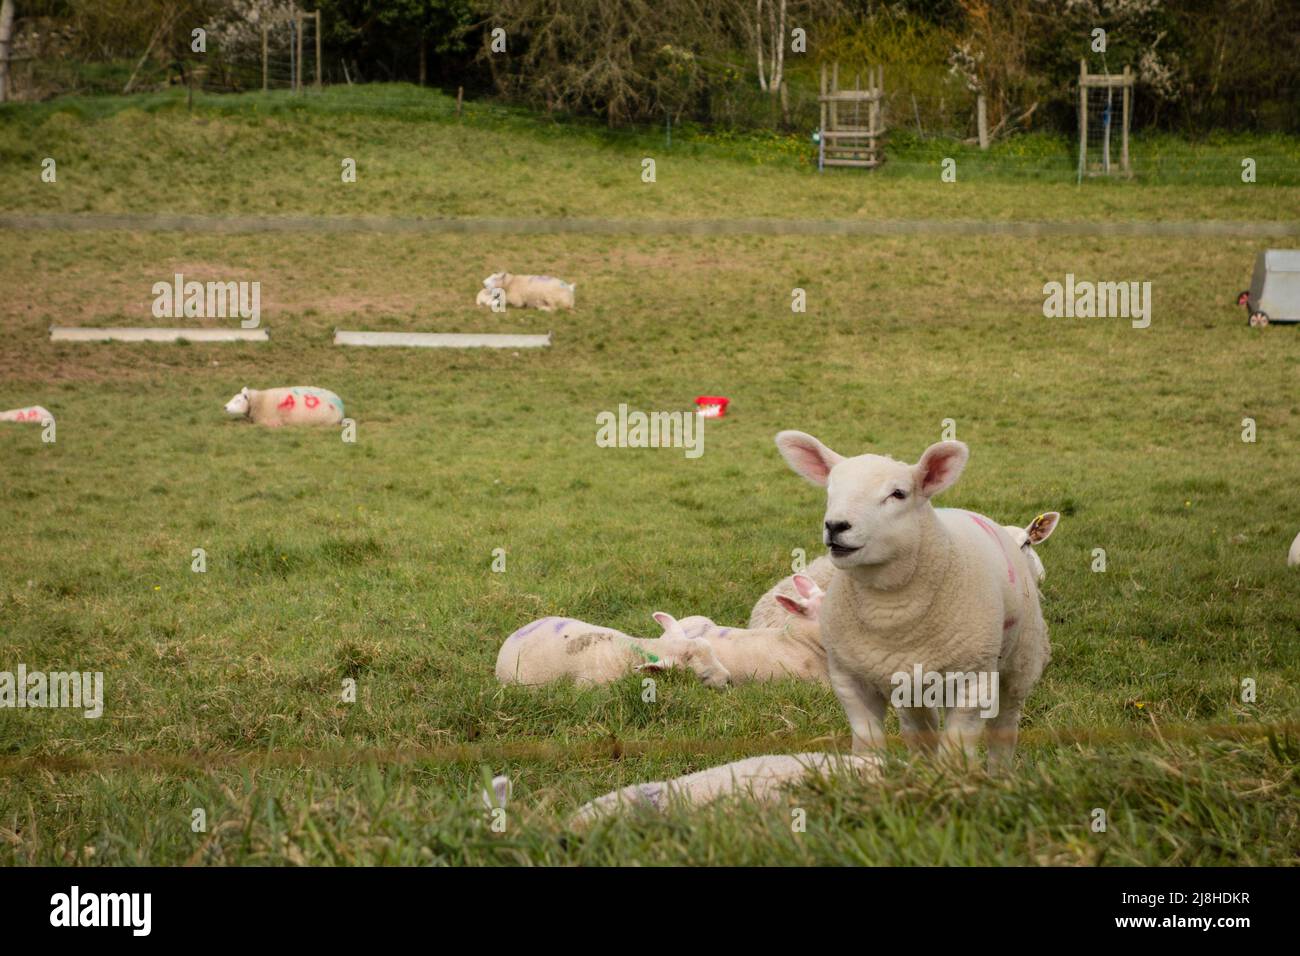 Lambs on grass field, Tetbury, Gloucestershire, UK Stock Photo